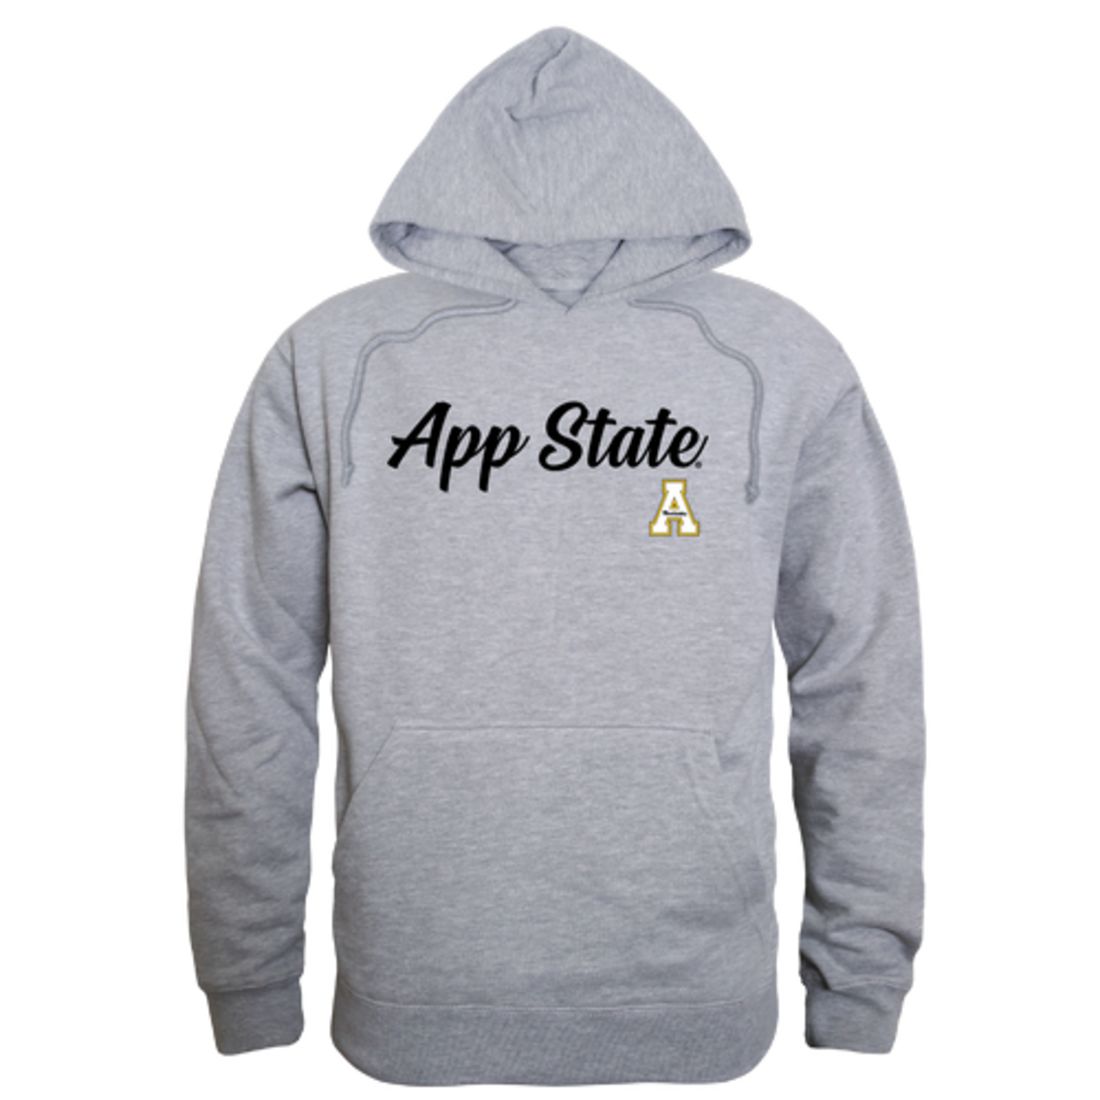 Appalachian App State University Mountaineers Mens Script Hoodie Sweatshirt Black-Campus-Wardrobe